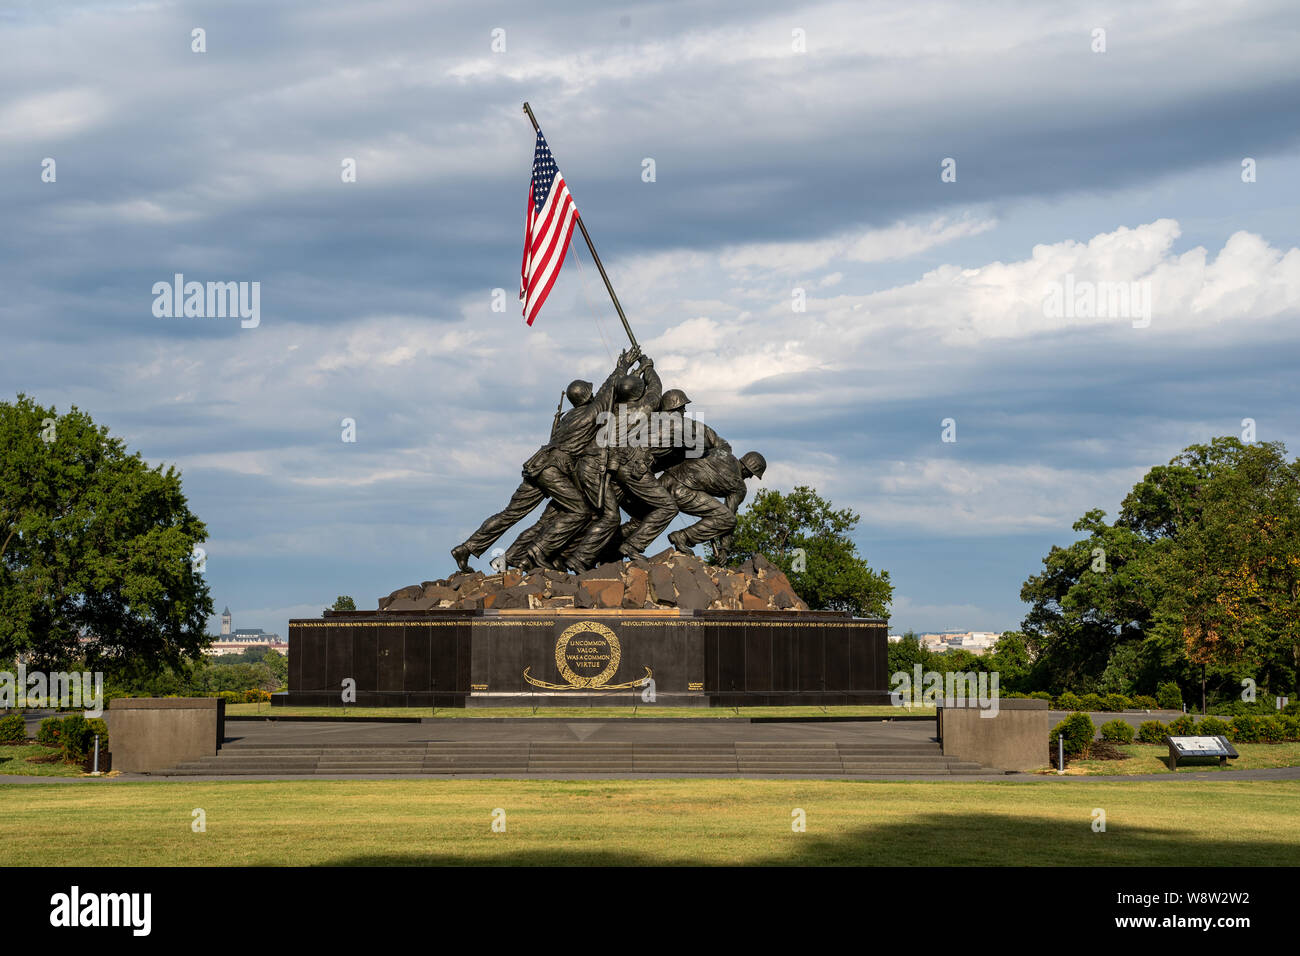 Arlington, Virginie - 7 août 2019 : United States Marine Corps War Memorial dépeignant la plantation du drapeau sur Iwo Jima lors de la DEUXIÈME GUERRE MONDIALE (World War 2) Banque D'Images